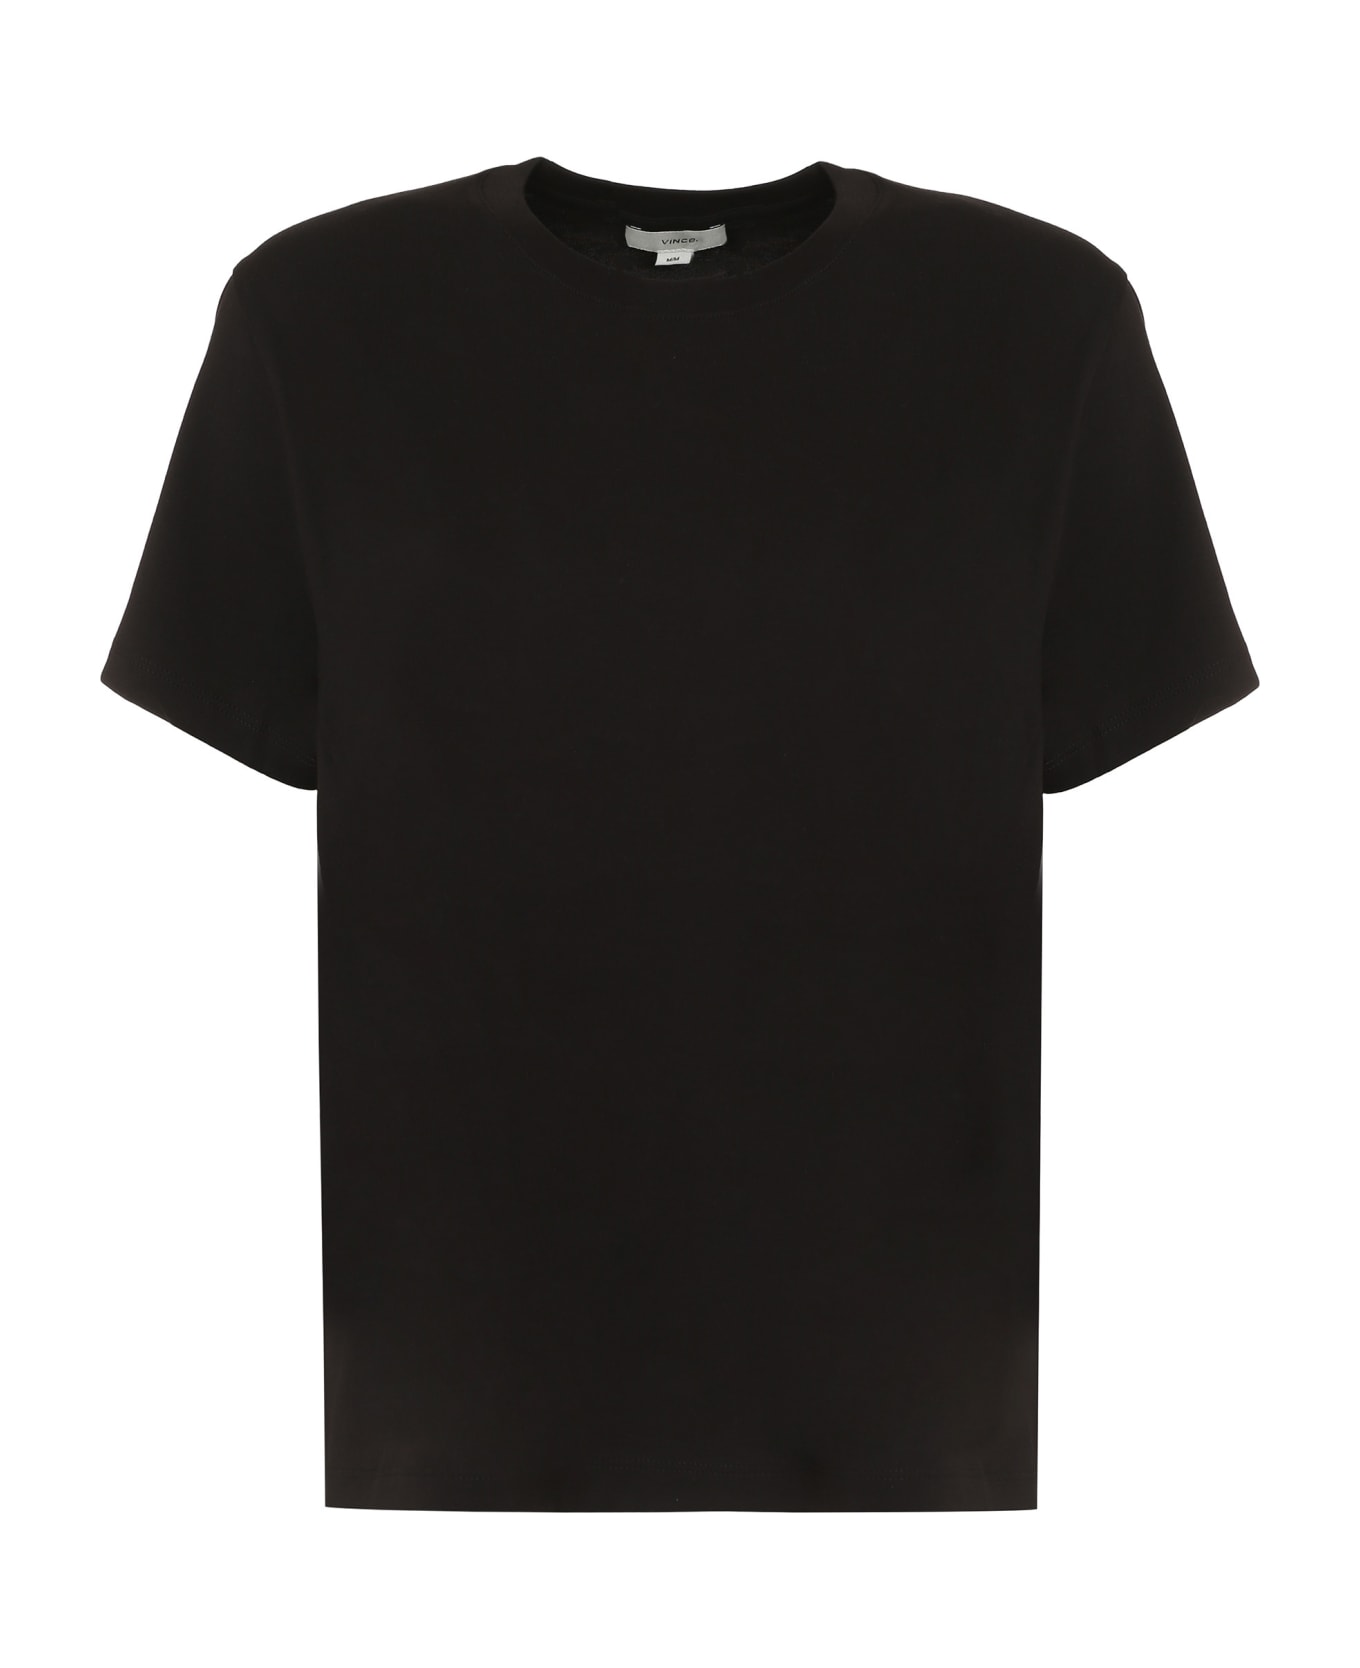 Vince Cotton T-shirt - Blk Black